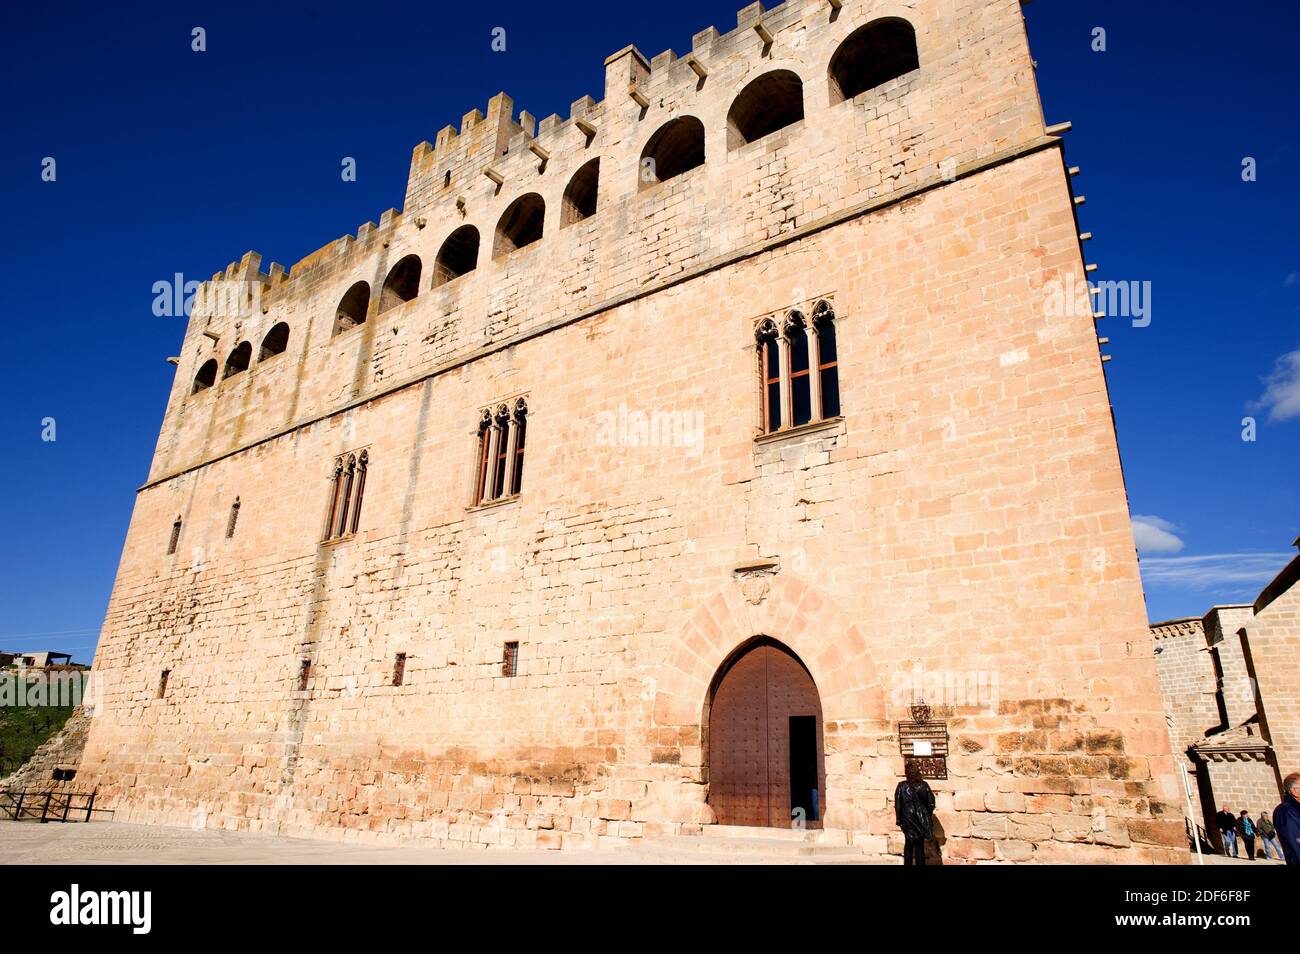 Valderrobres oder Vall-de-roures, Schloss-Palast (Nationaldenkmal). Region Matarraña, Provinz Teruel, Aragon, Spanien. Stockfoto